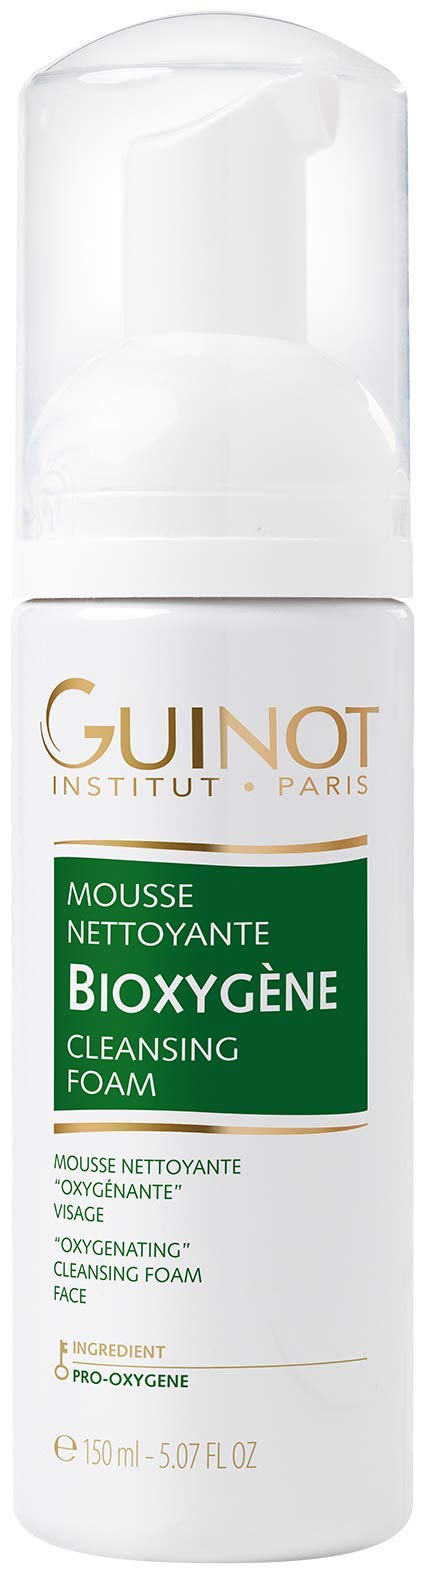 Guinot Mousse Bioxygene Reinigungsschaum, 1er Pack (1 x 150 ml)